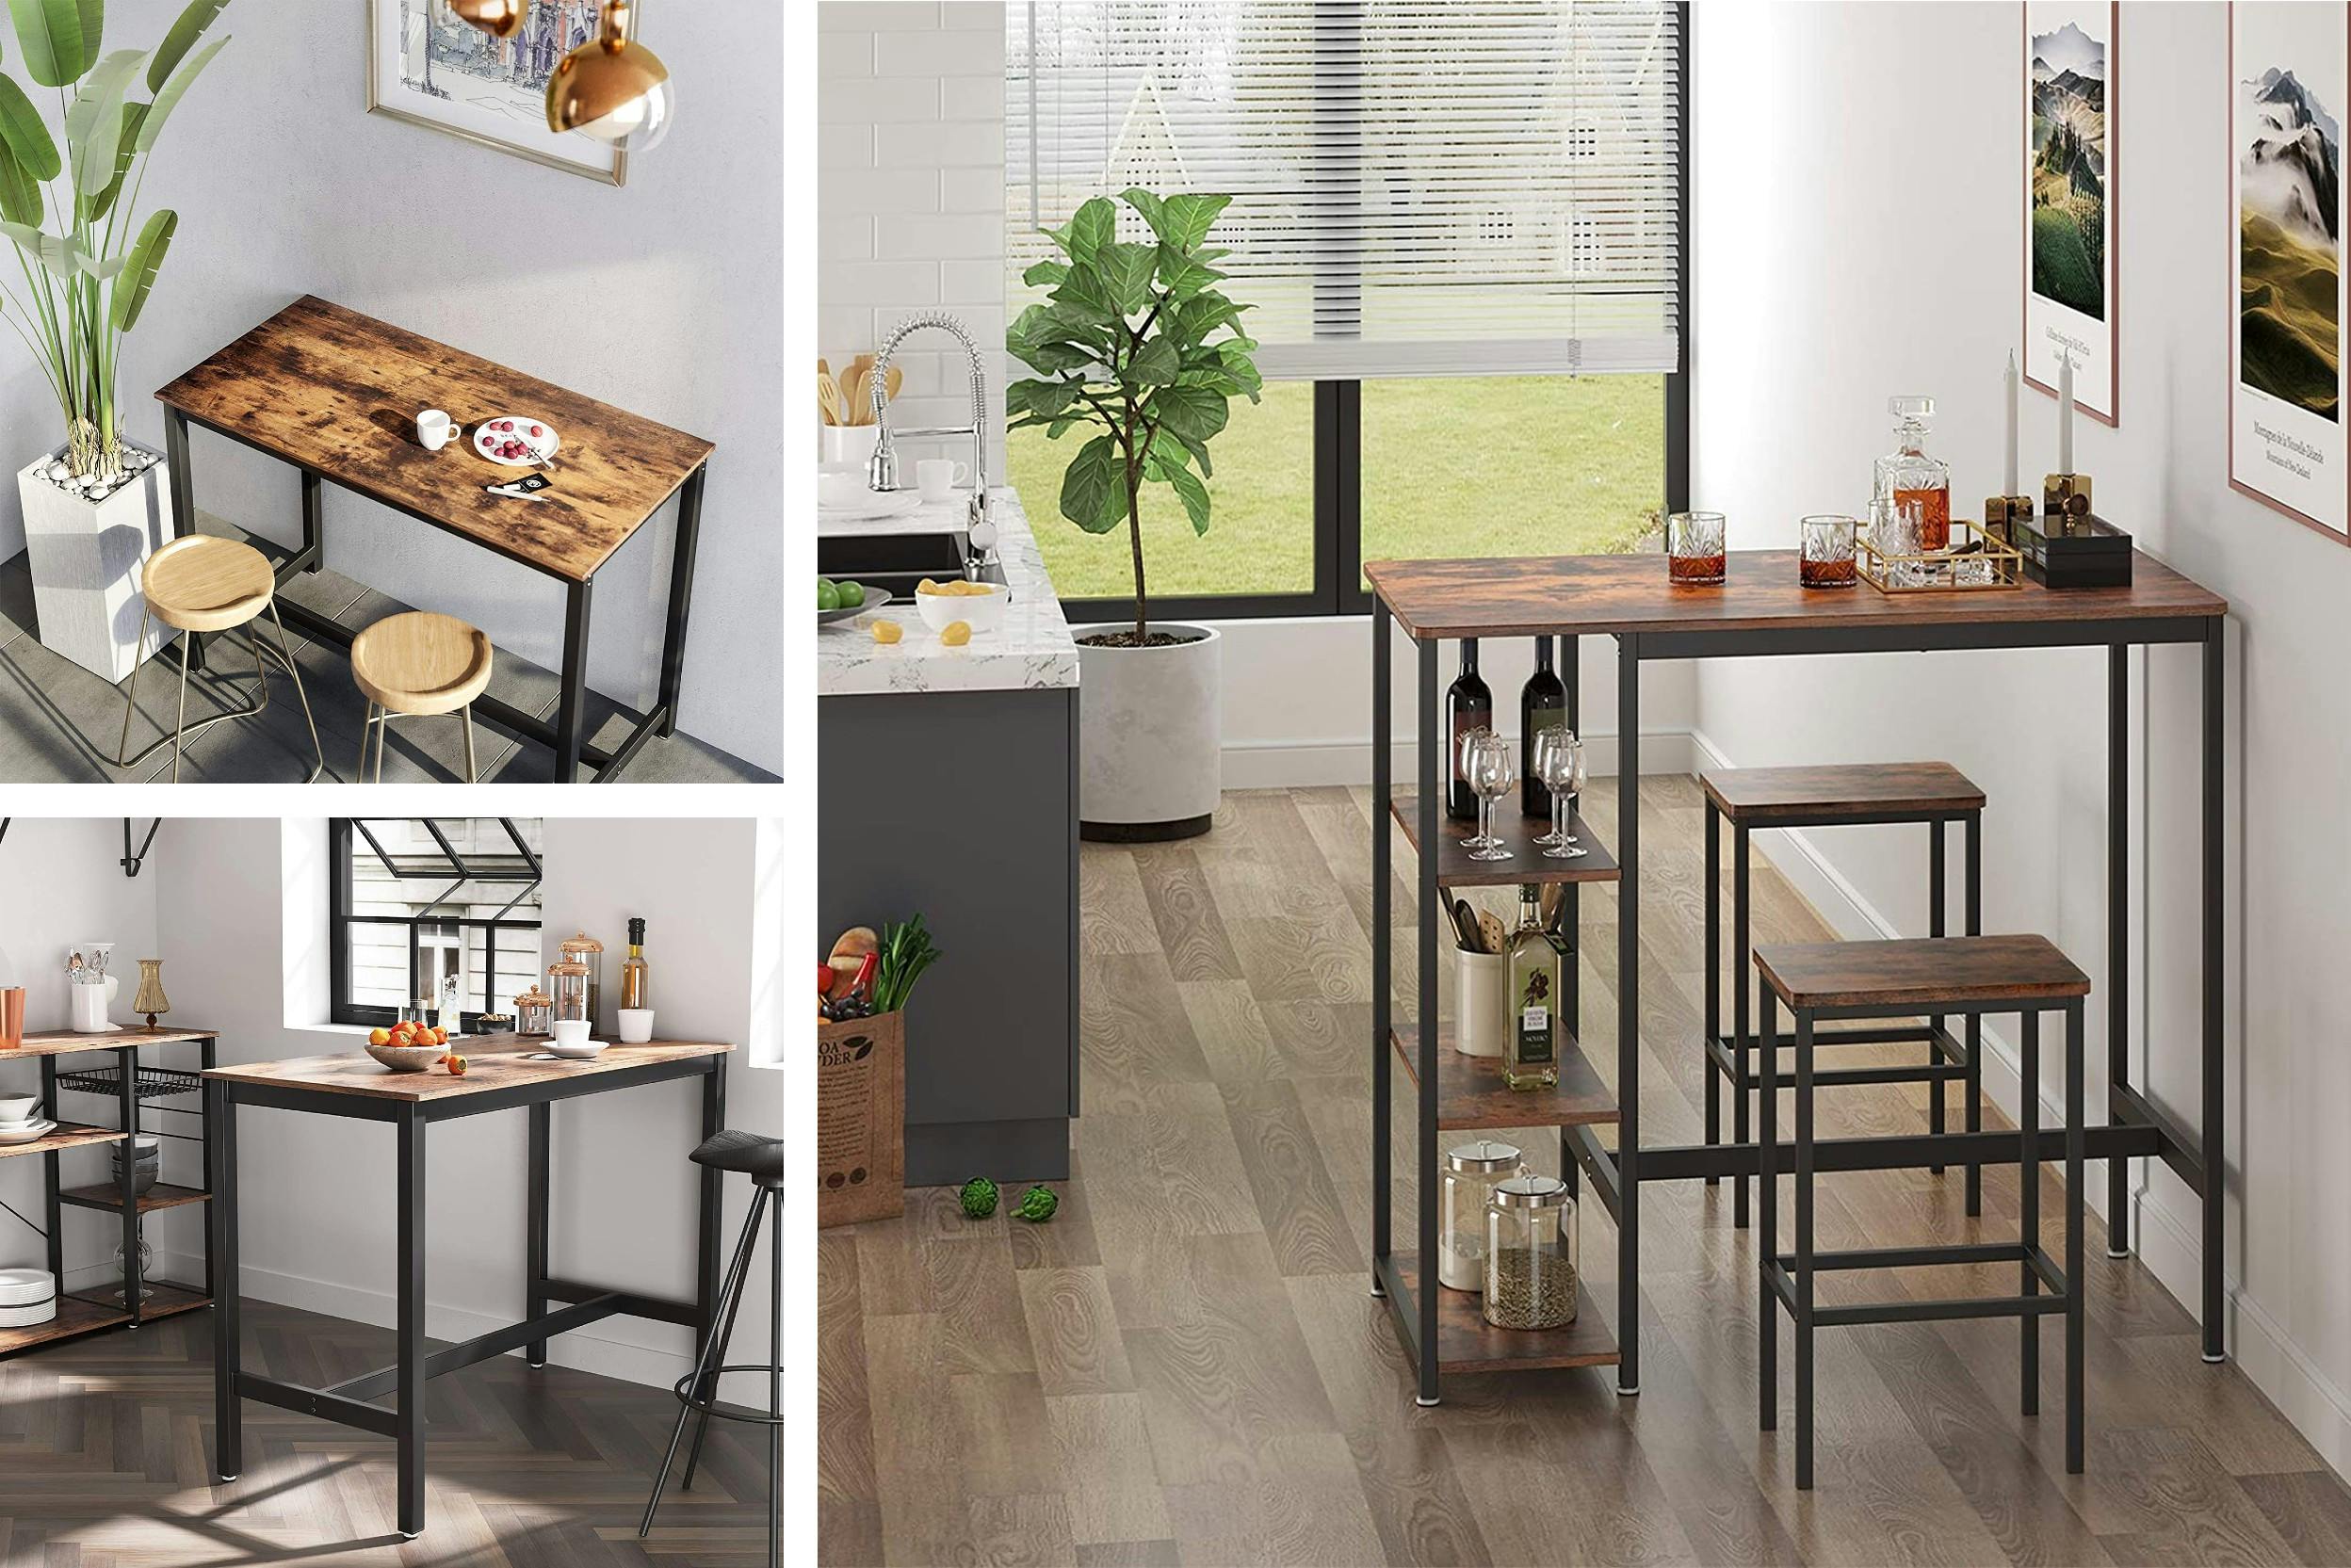 Différents meubles hauts pour bar et cuisine, en bois et métal, de style industriel, avec des éléments dératifs et des plantes